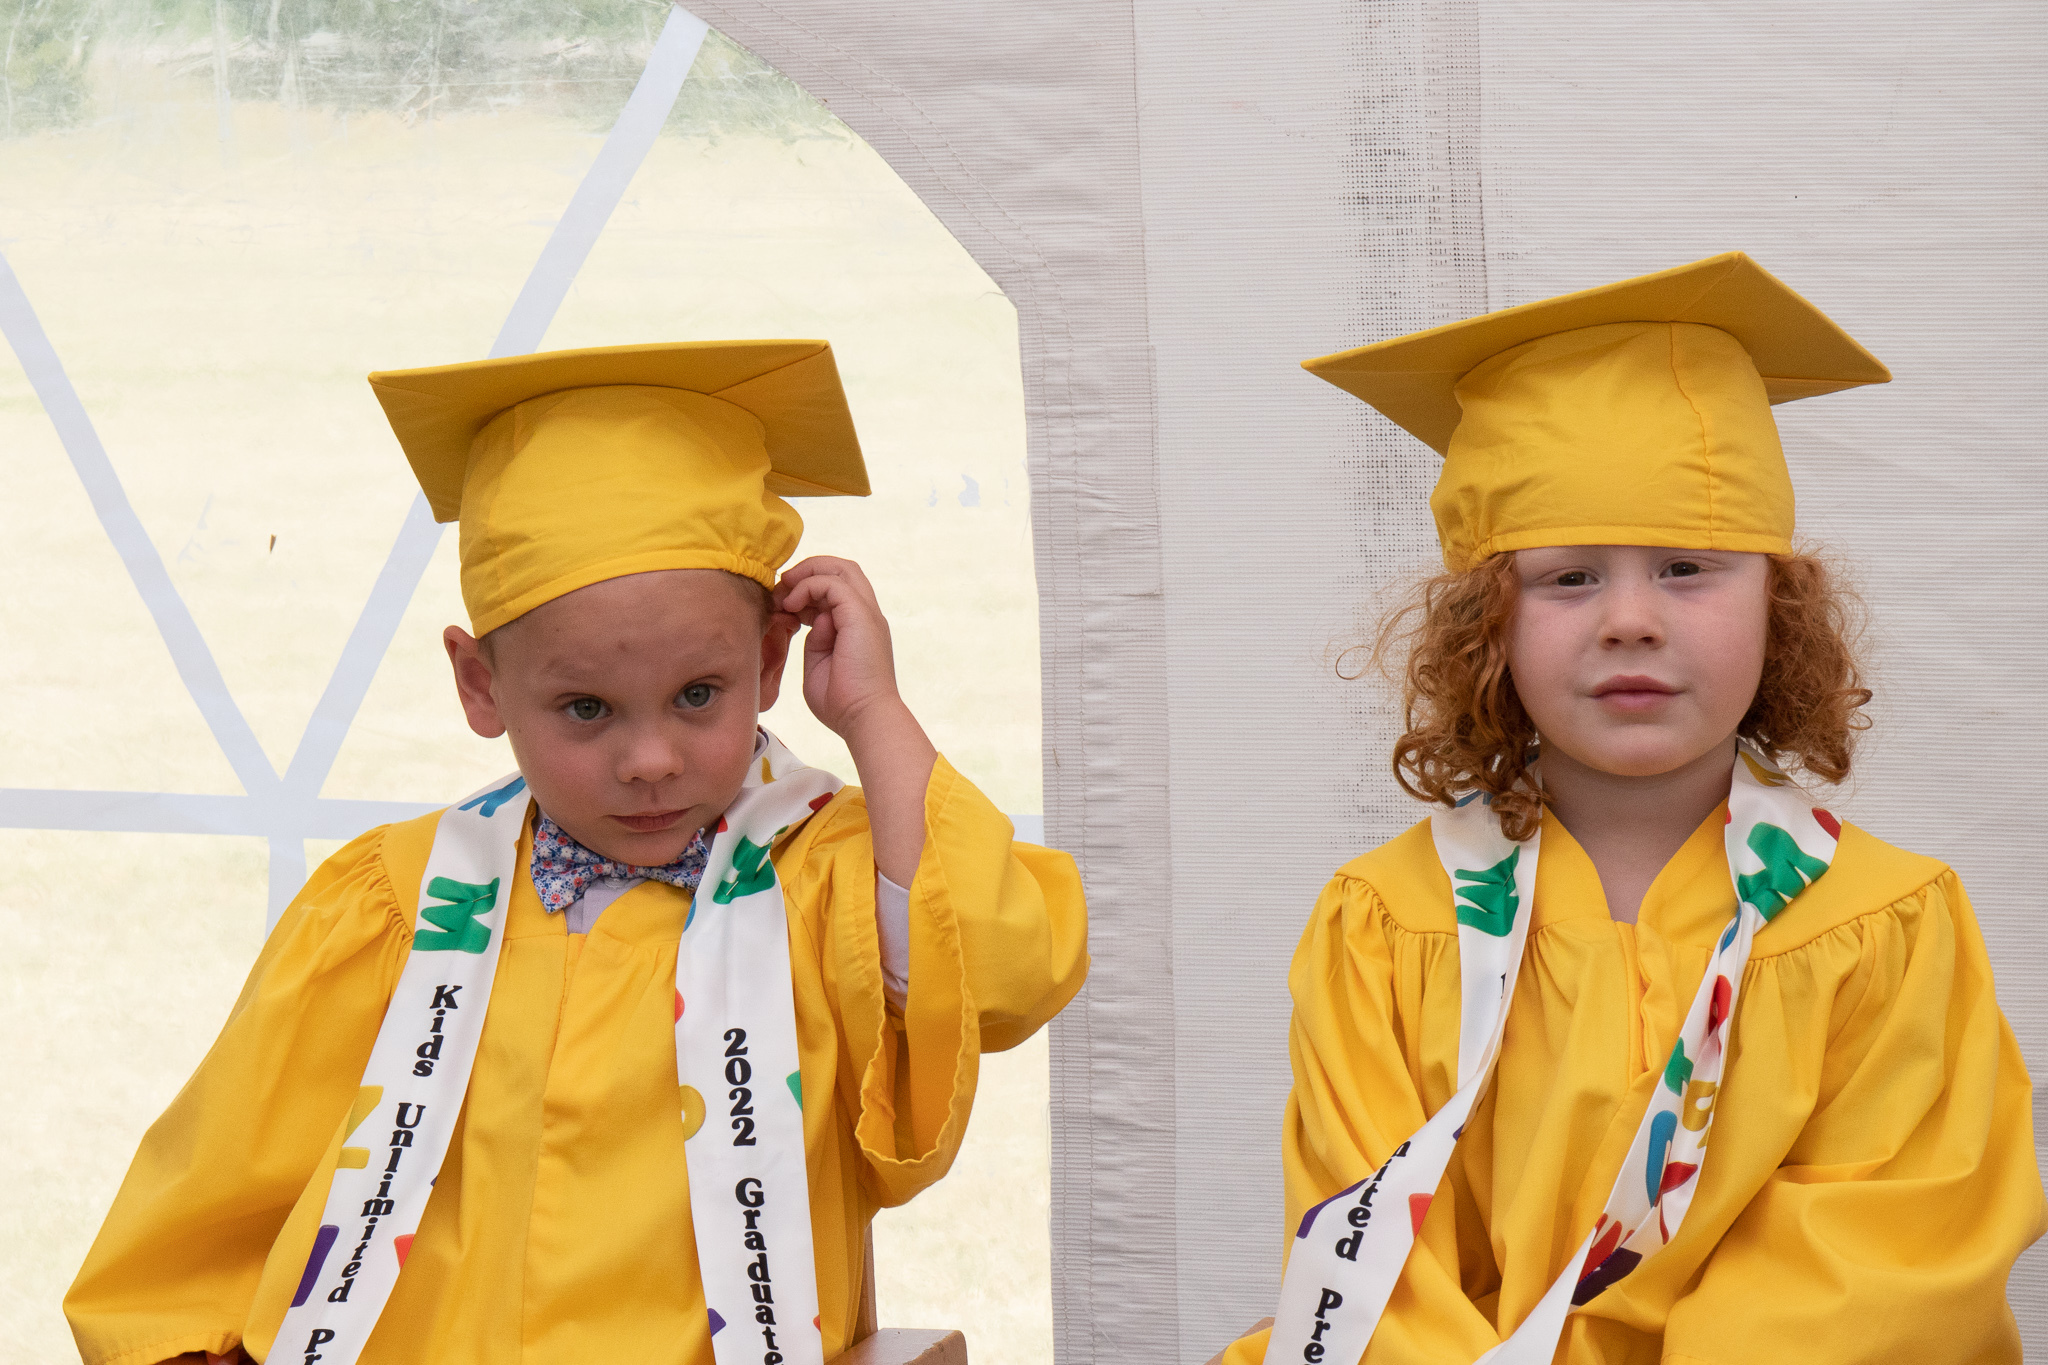 MG 6541 - Congratulations to the 2022 Kids Unlimited Preschool Graduates!